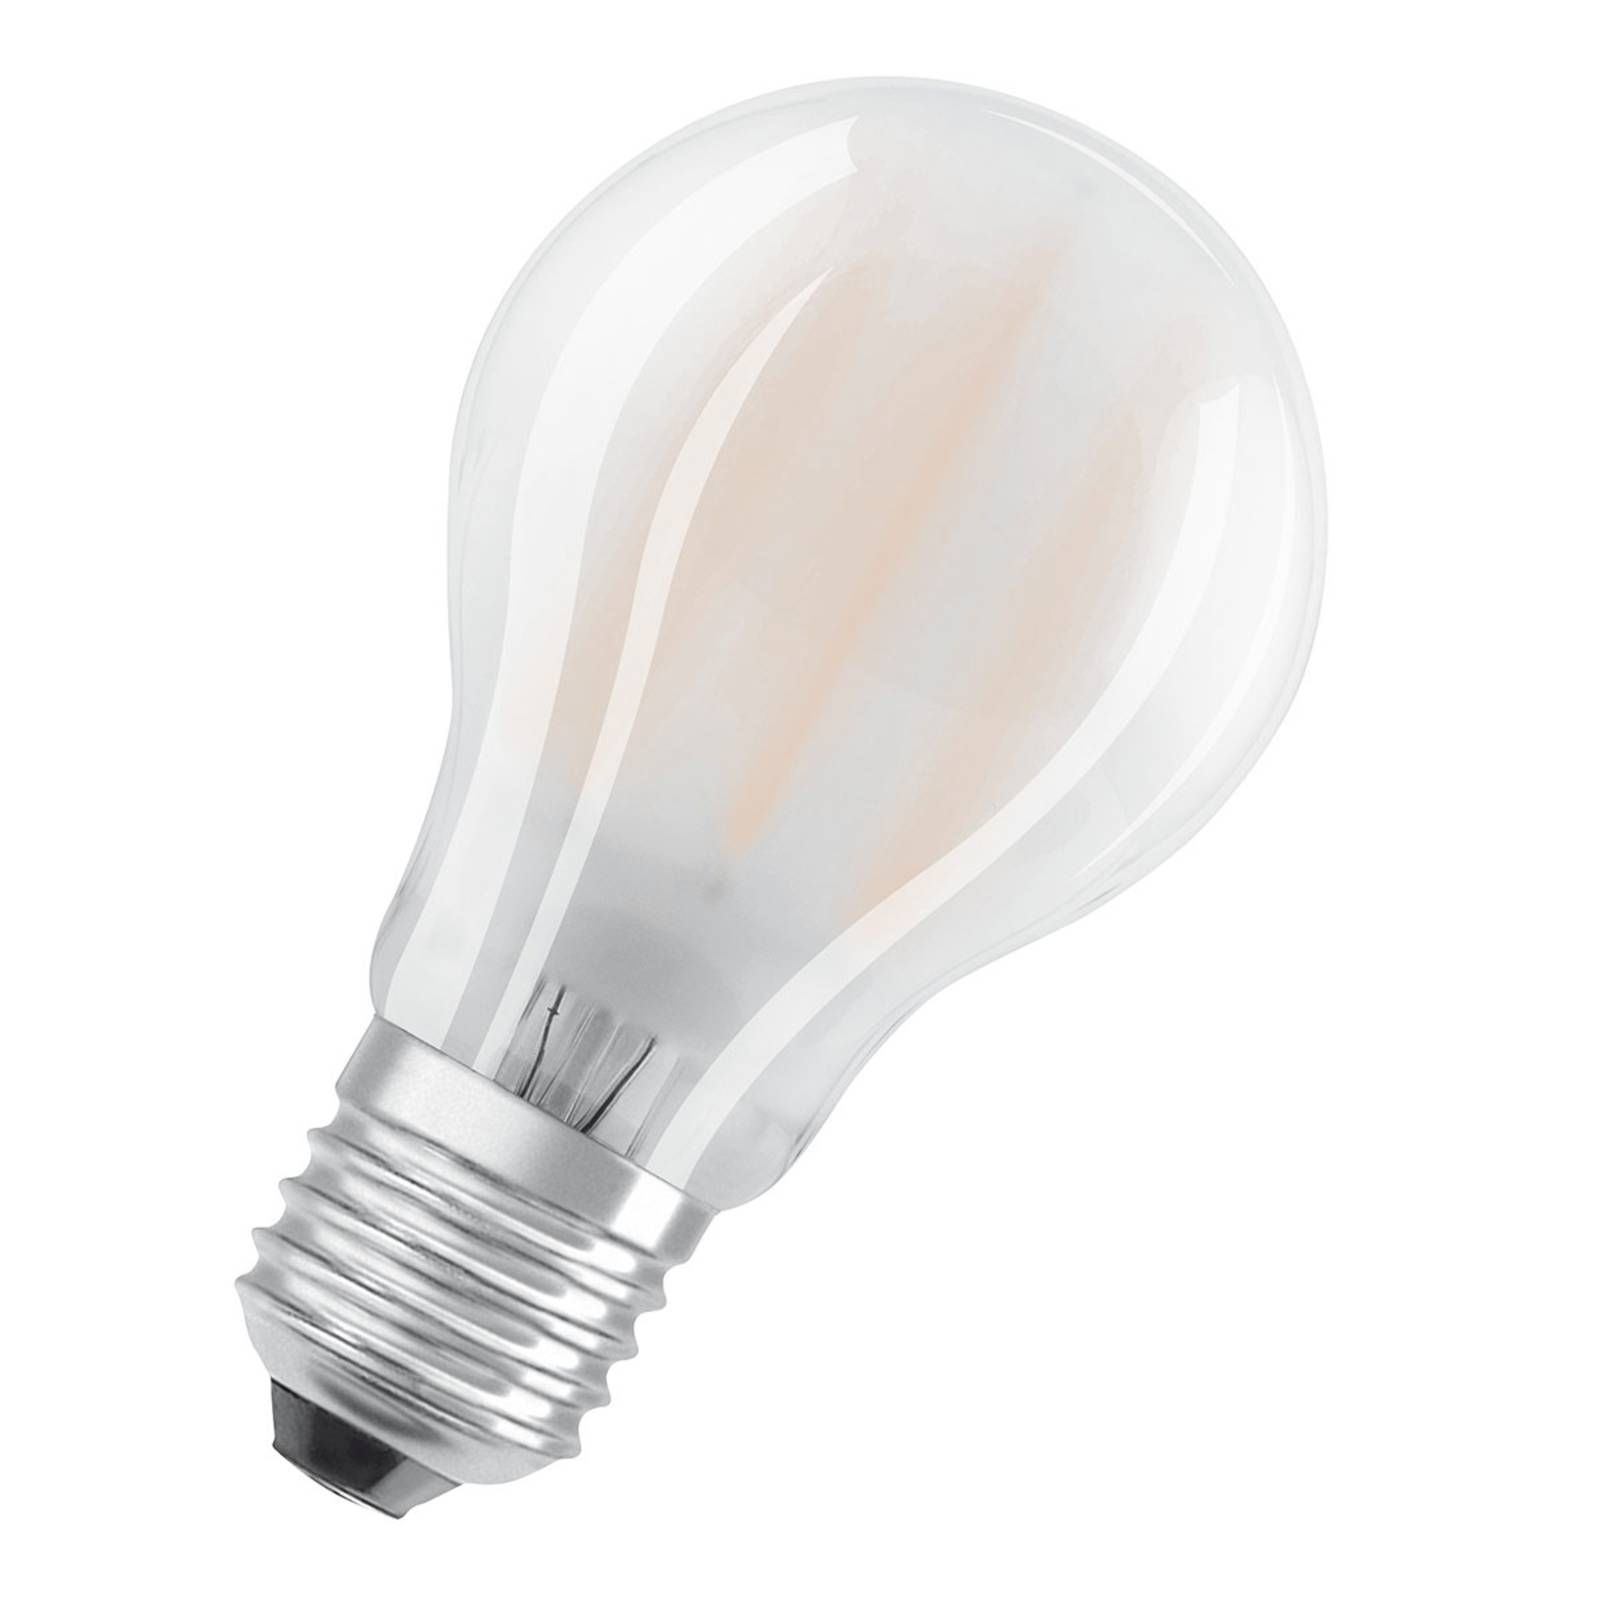 OSRAM LED žiarovka E27 6, 5W 827 matná v súprave 2 kusy, plast, E27, 6.5W, Energialuokka: E, P: 10.5 cm